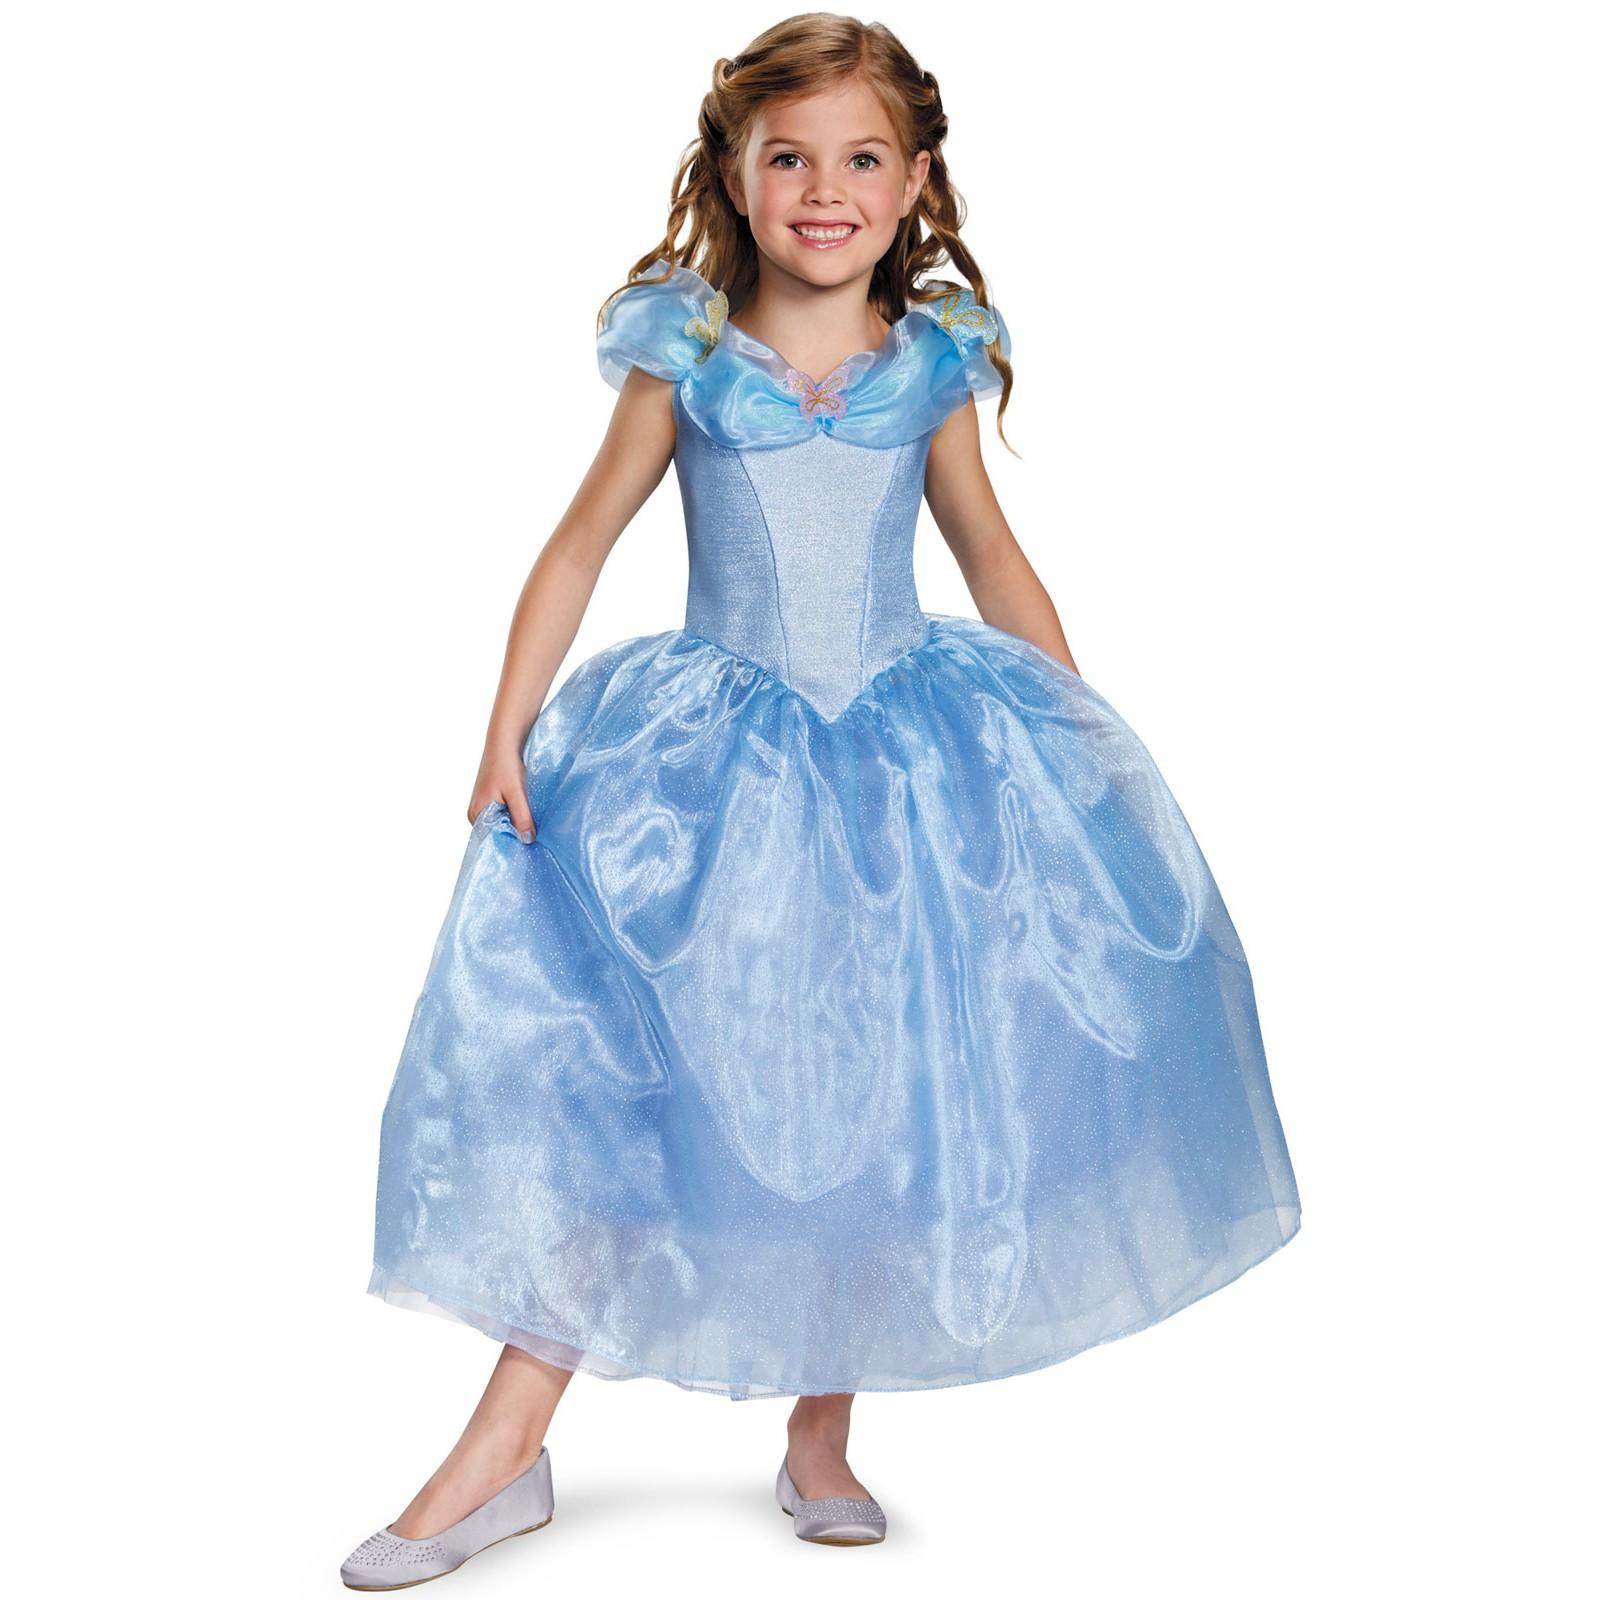 Cinderella Movie Child Deluxe Costume Size XS,S,M,L - Click Image to Close